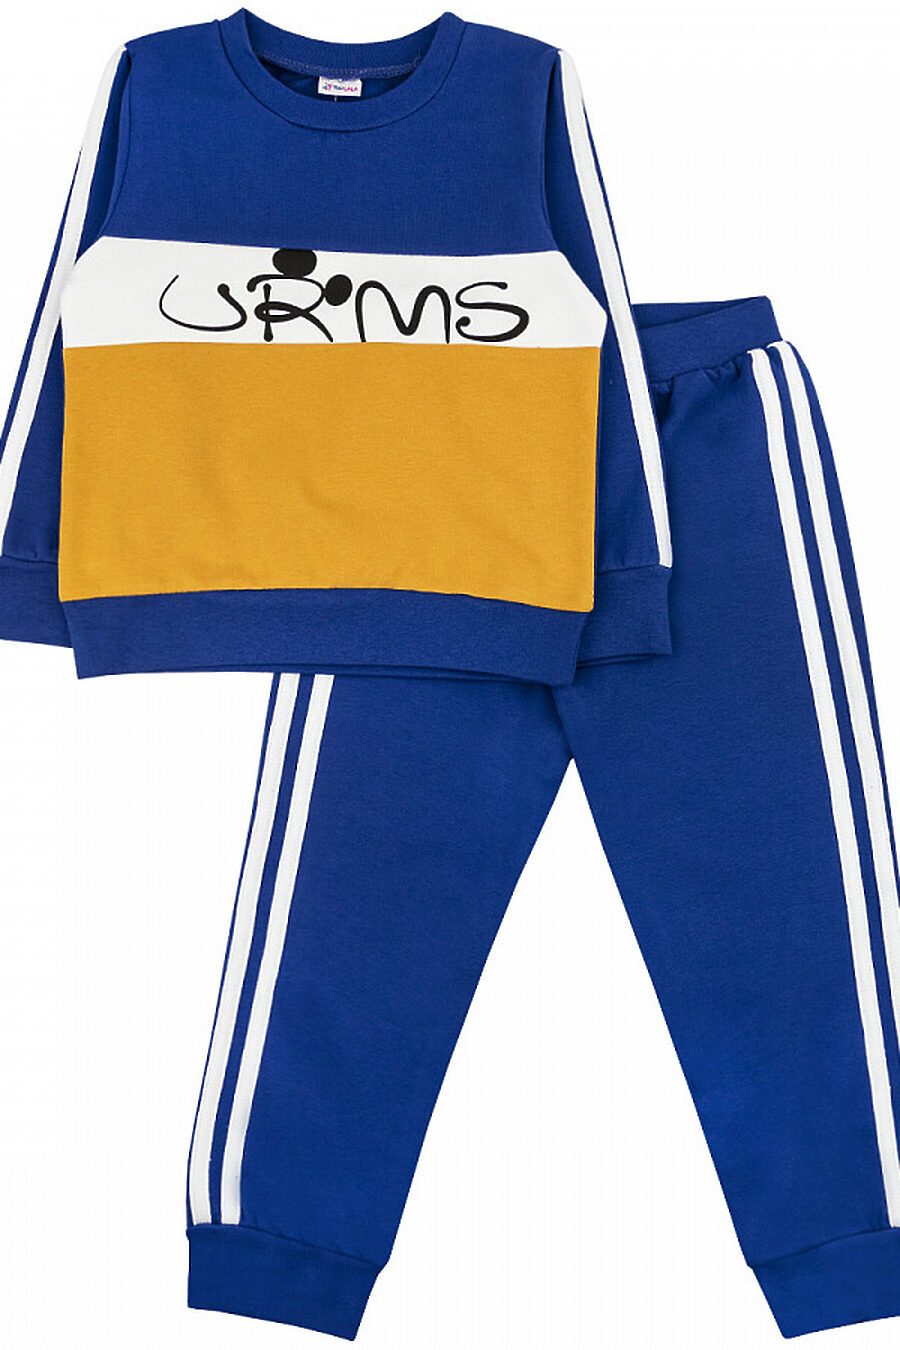 Комплект(брюки+джемпер) YOULALA (720553), купить в Moyo.moda